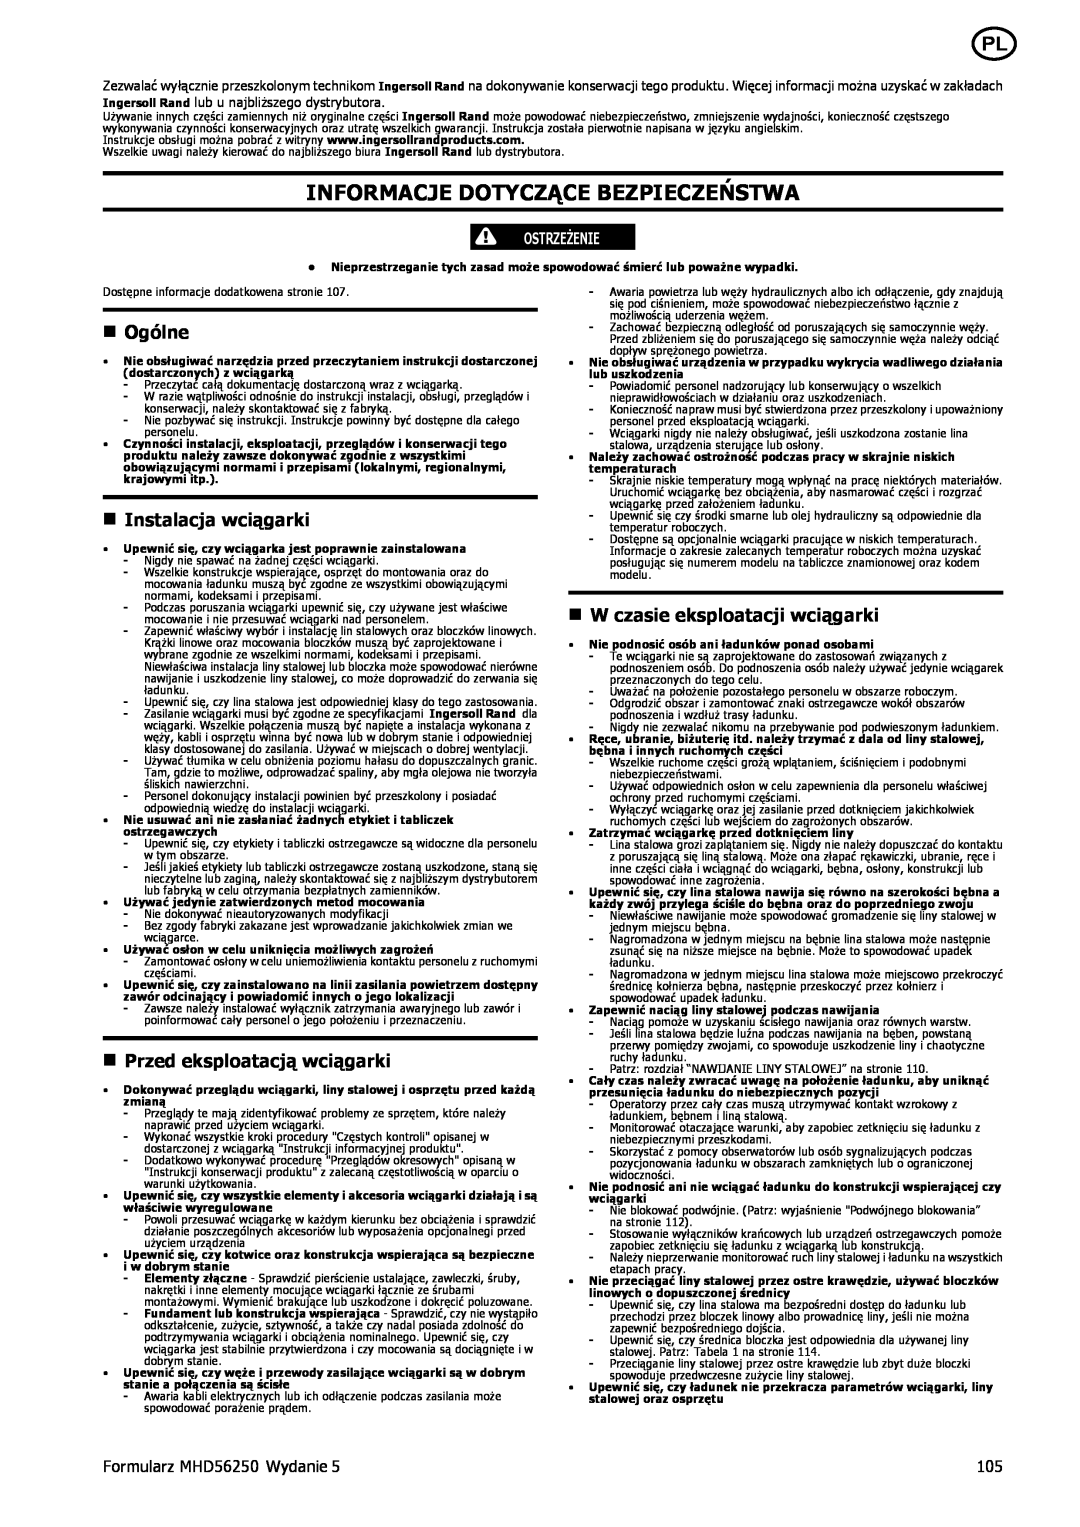 Ingersoll-Rand manual Informacje Dotyczące Bezpieczeństwa, n Ogólne, n Instalacja wciągarki, Formularz MHD56250 Wydanie 